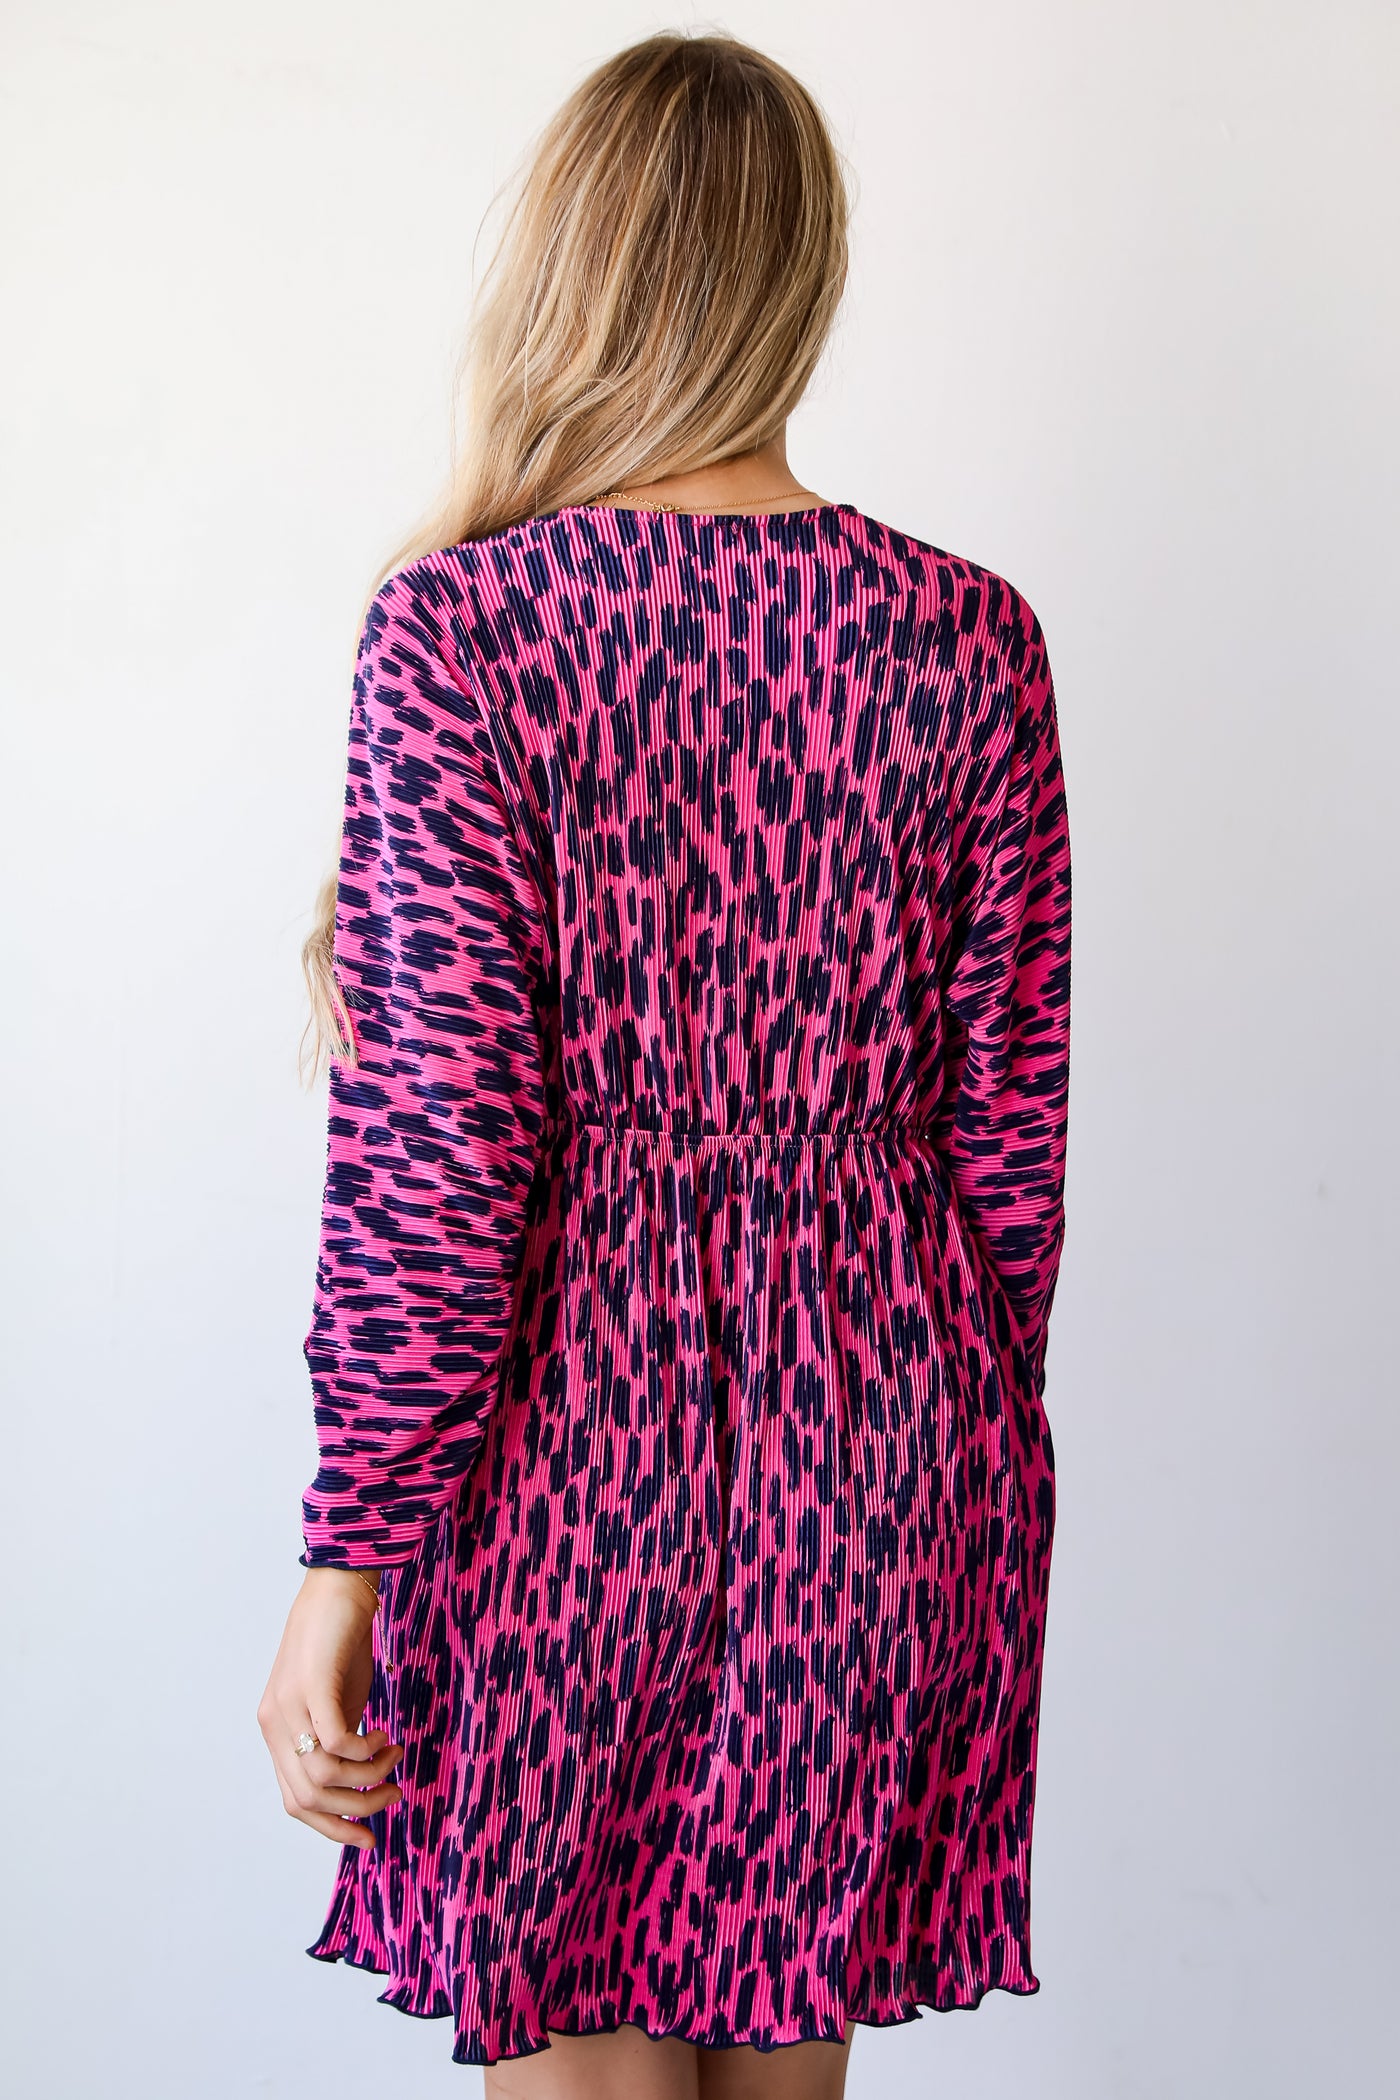 event dresses.  Cheap Dresses. Online cheap dresses. Pink Dress. Online Women's Boutique